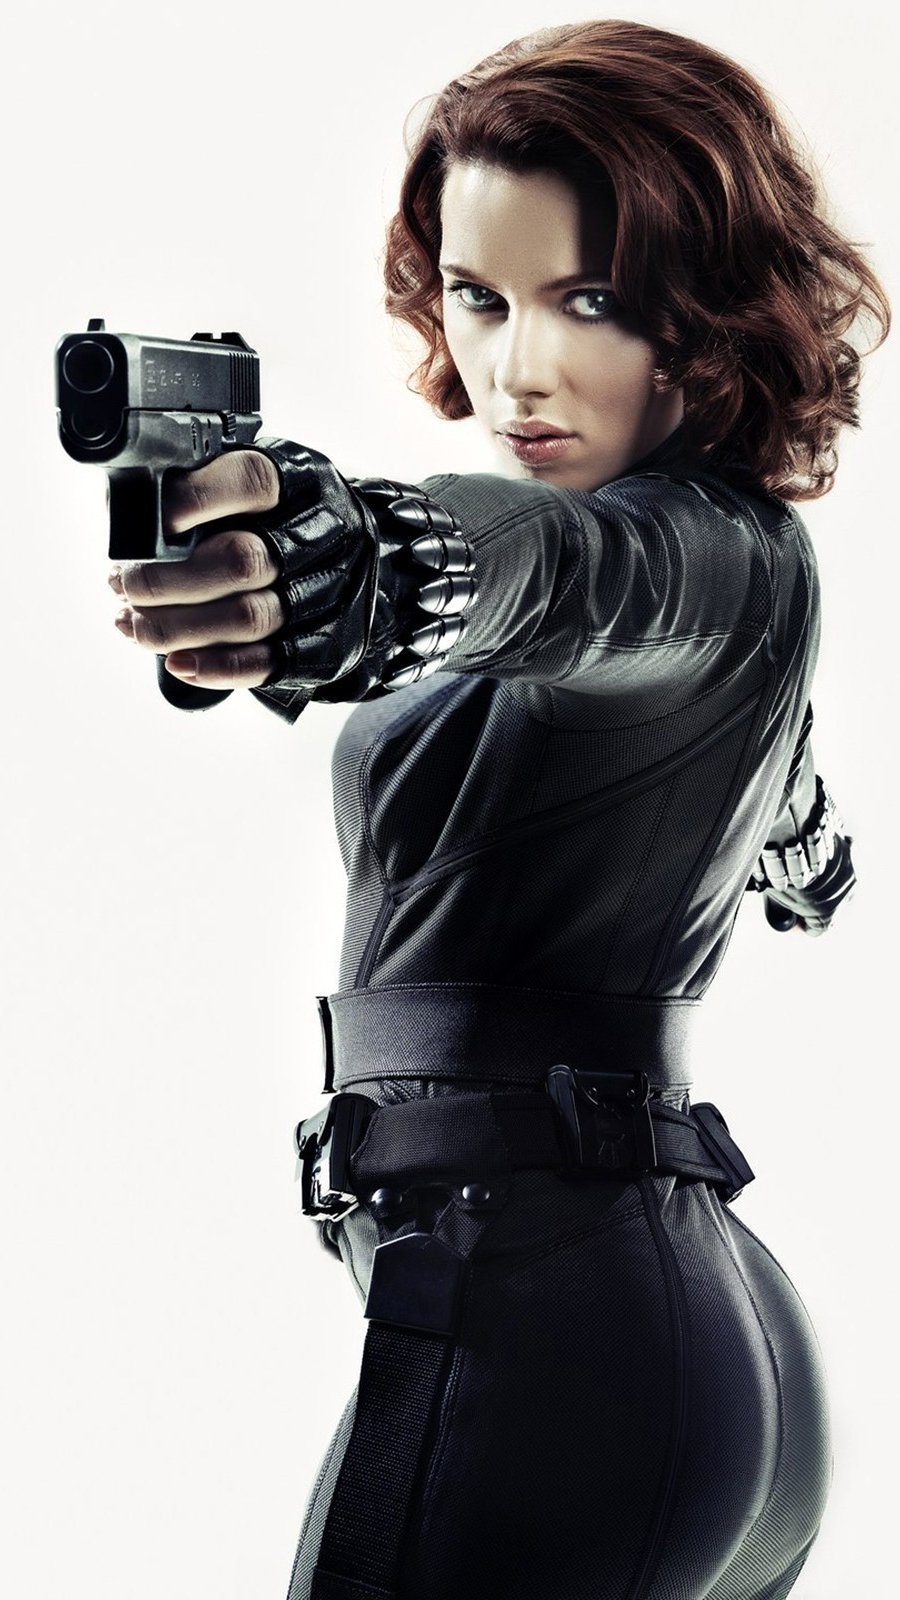 Fondos de pantalla Scarlett Johansson como Black Widow en Avengers Vertical